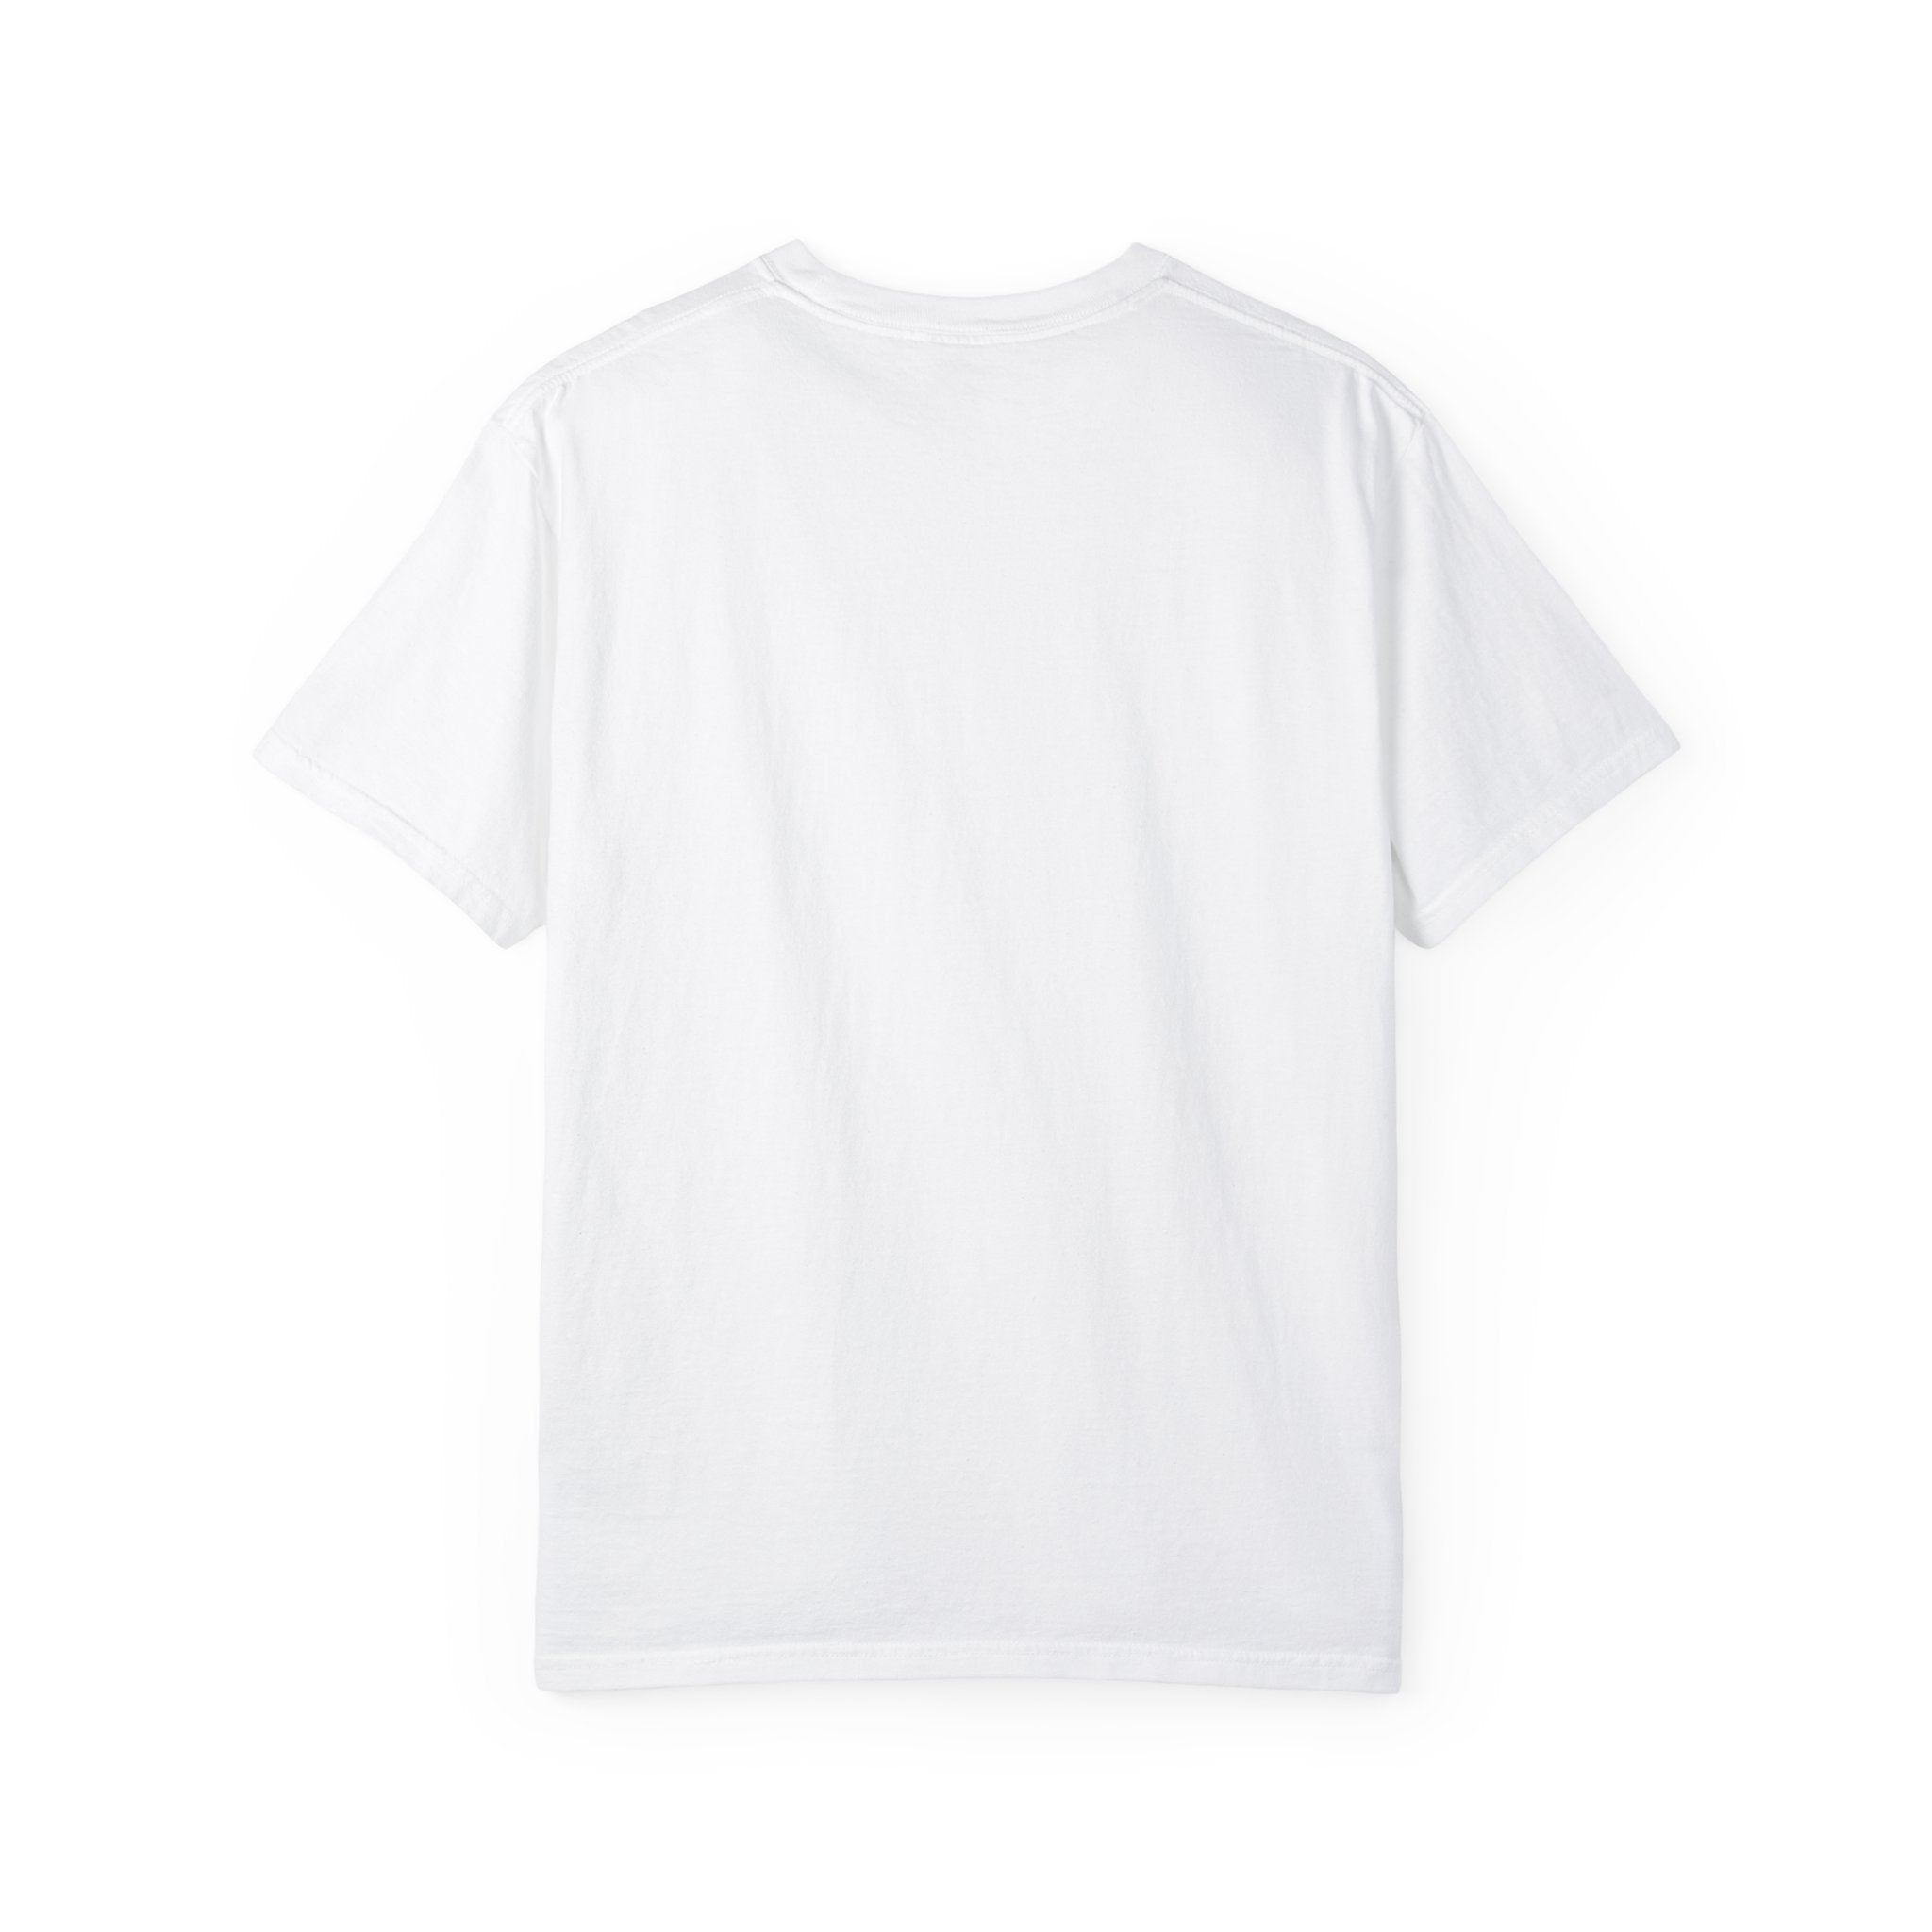 IllumiNaughty Unisex T-shirt